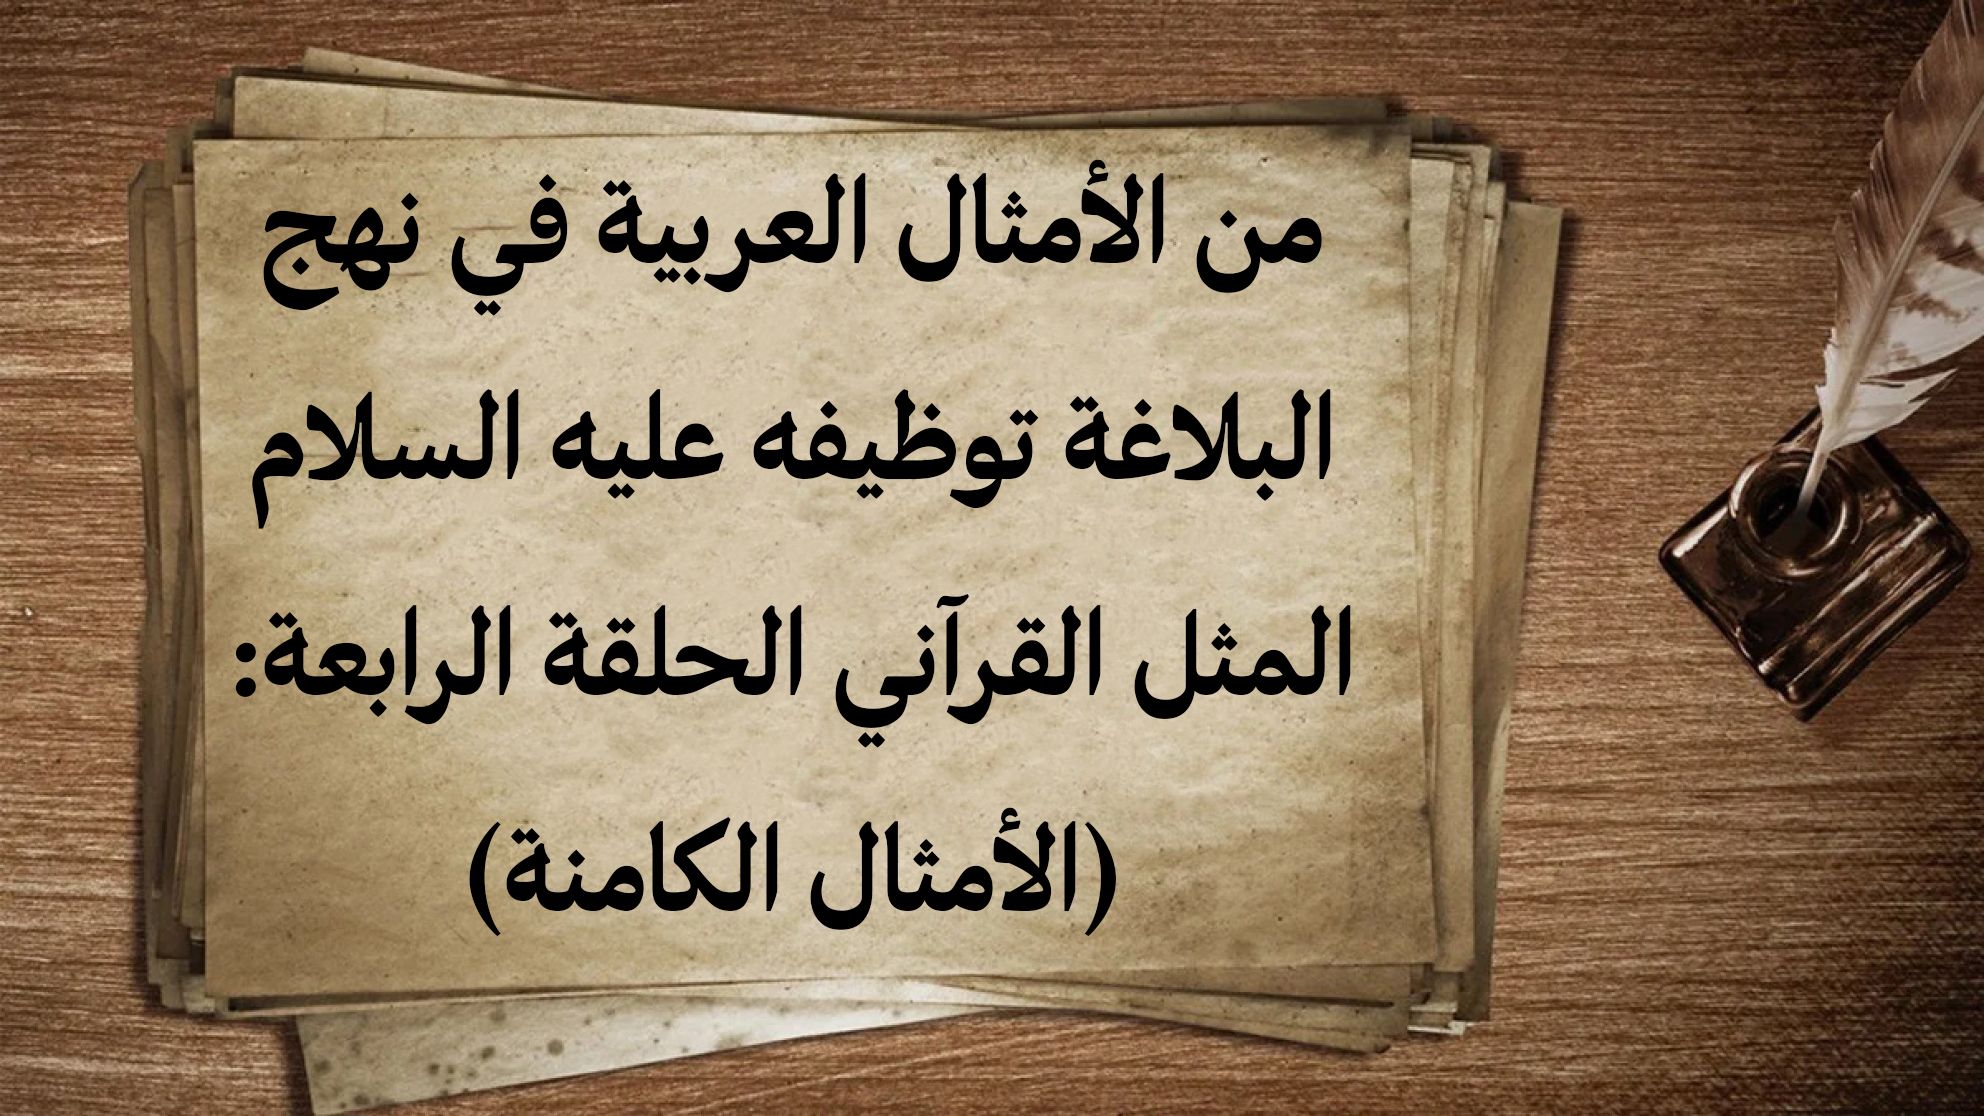 من الأمثال العربية في نهج البلاغة توظيفه عليه السلام المثل القرآني الحلقة الرابعة: (الأمثال الكامنة)